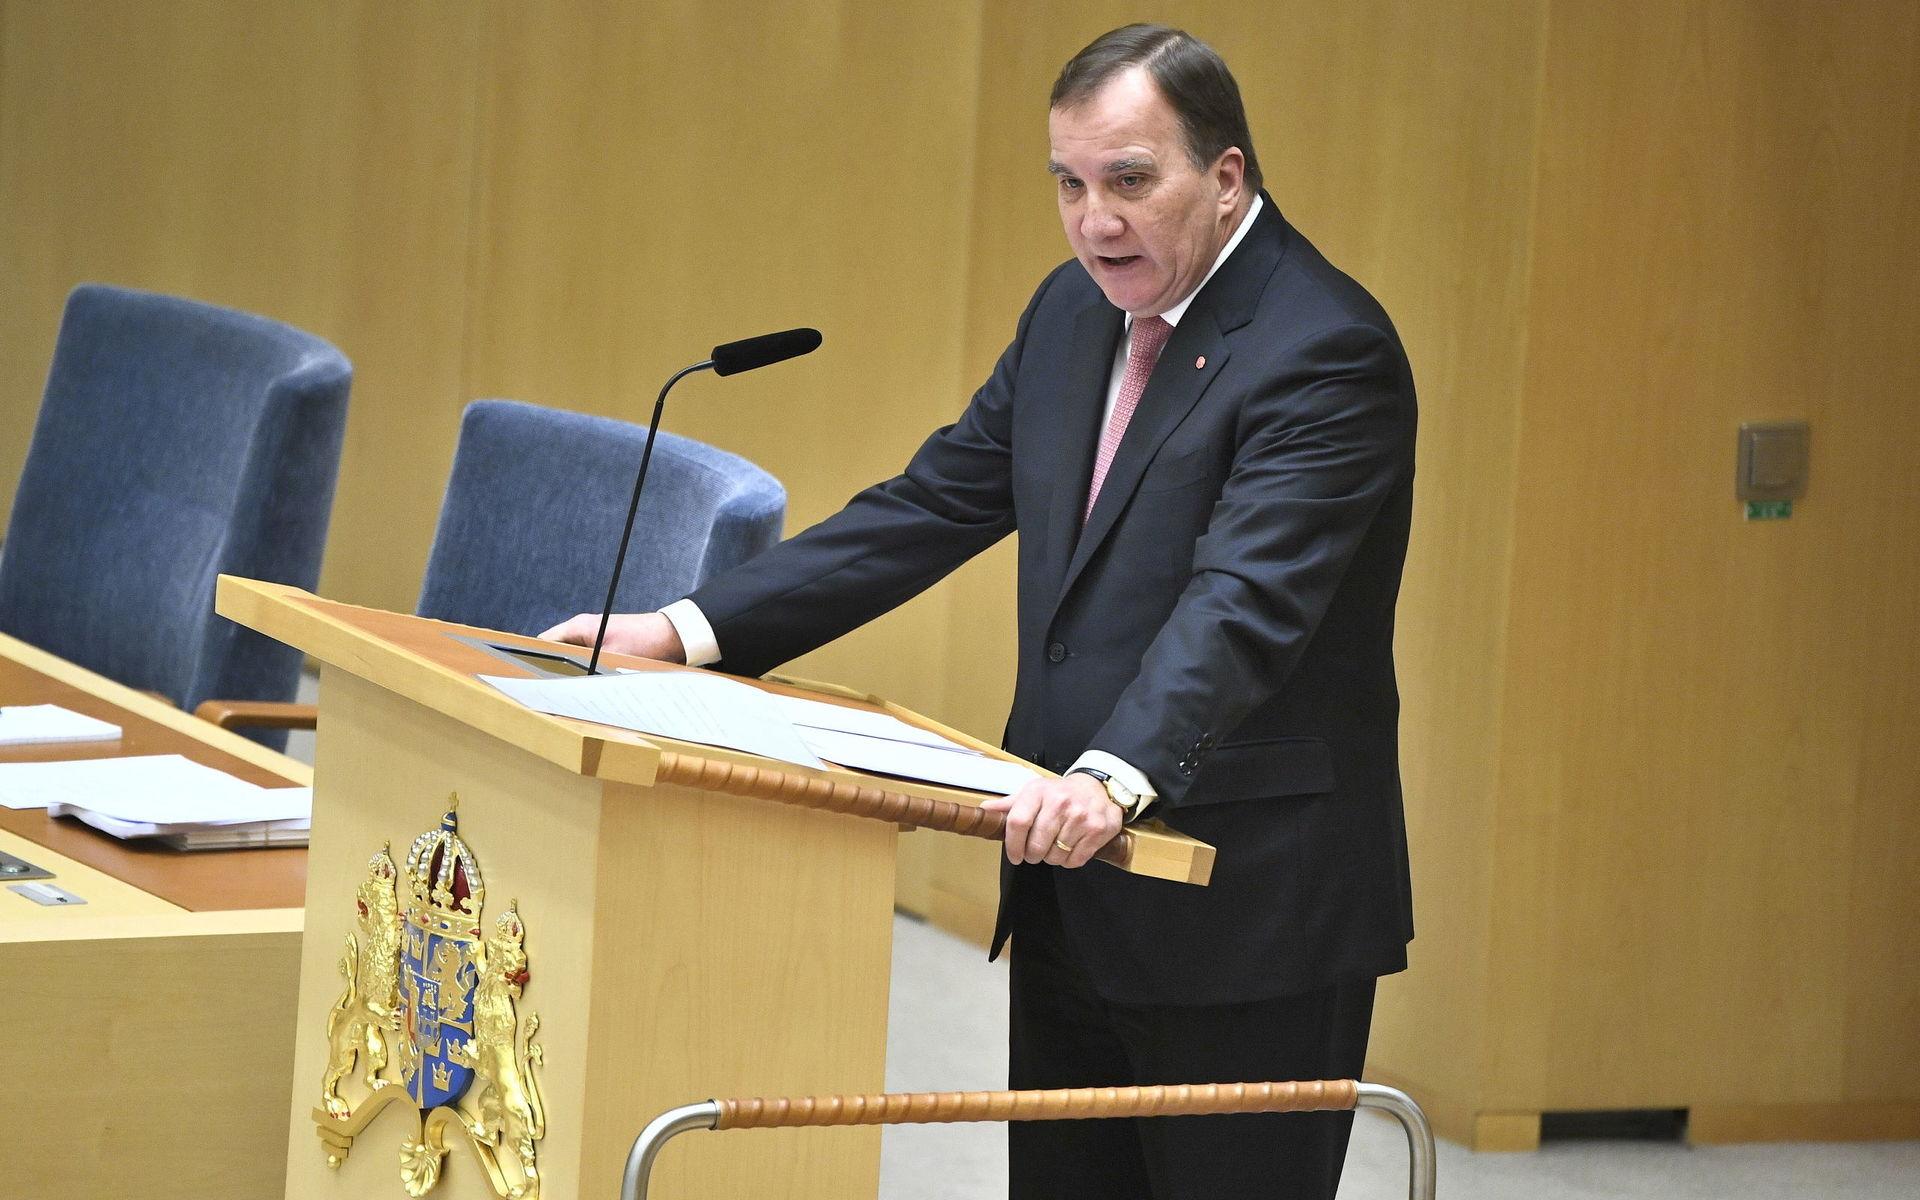 STOCKHOLM 20191113
Statsminister Stefan Löfven (S) under den EU-politiska partiledardebatten i riksdagshuset.
Foto: Claudio Bresciani / TT kod 10090